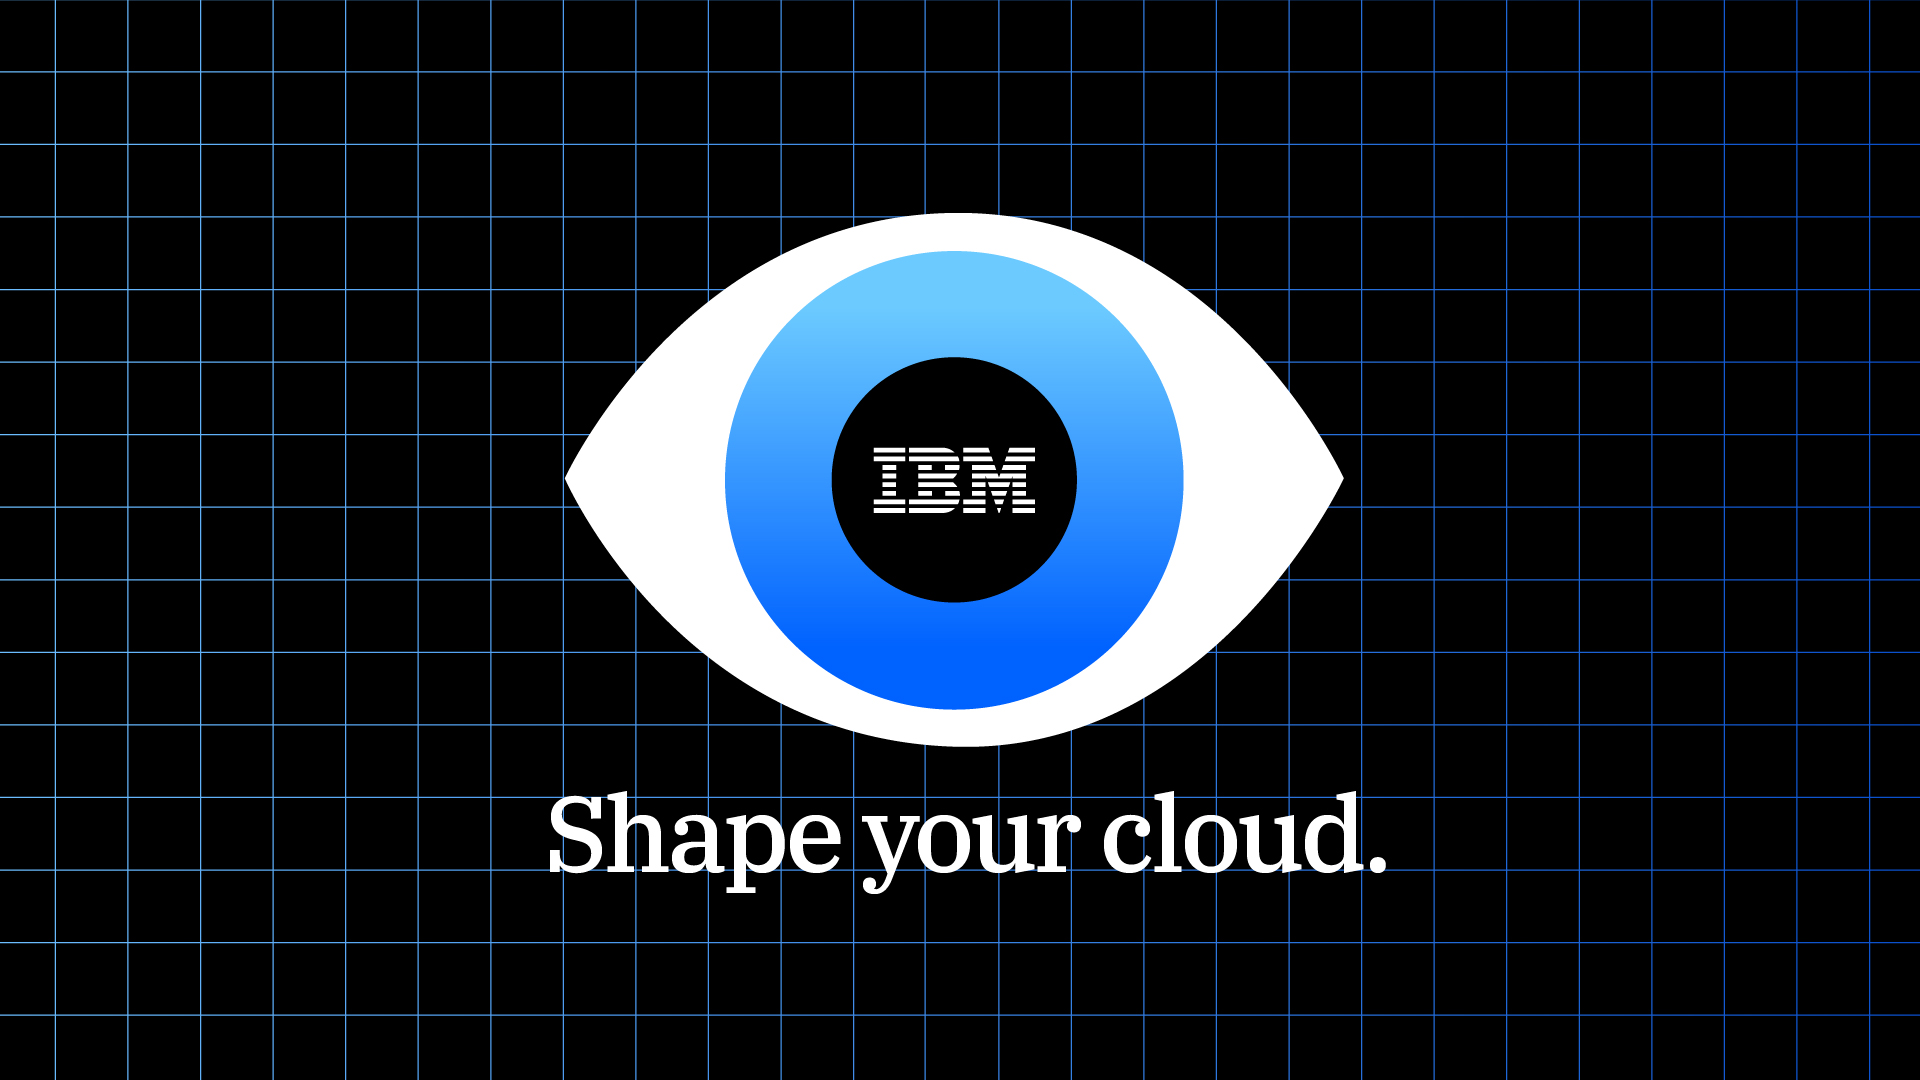 IBM_SHAPE-YOUR-CLOUD_DC_EDITS_BH_IBM-33